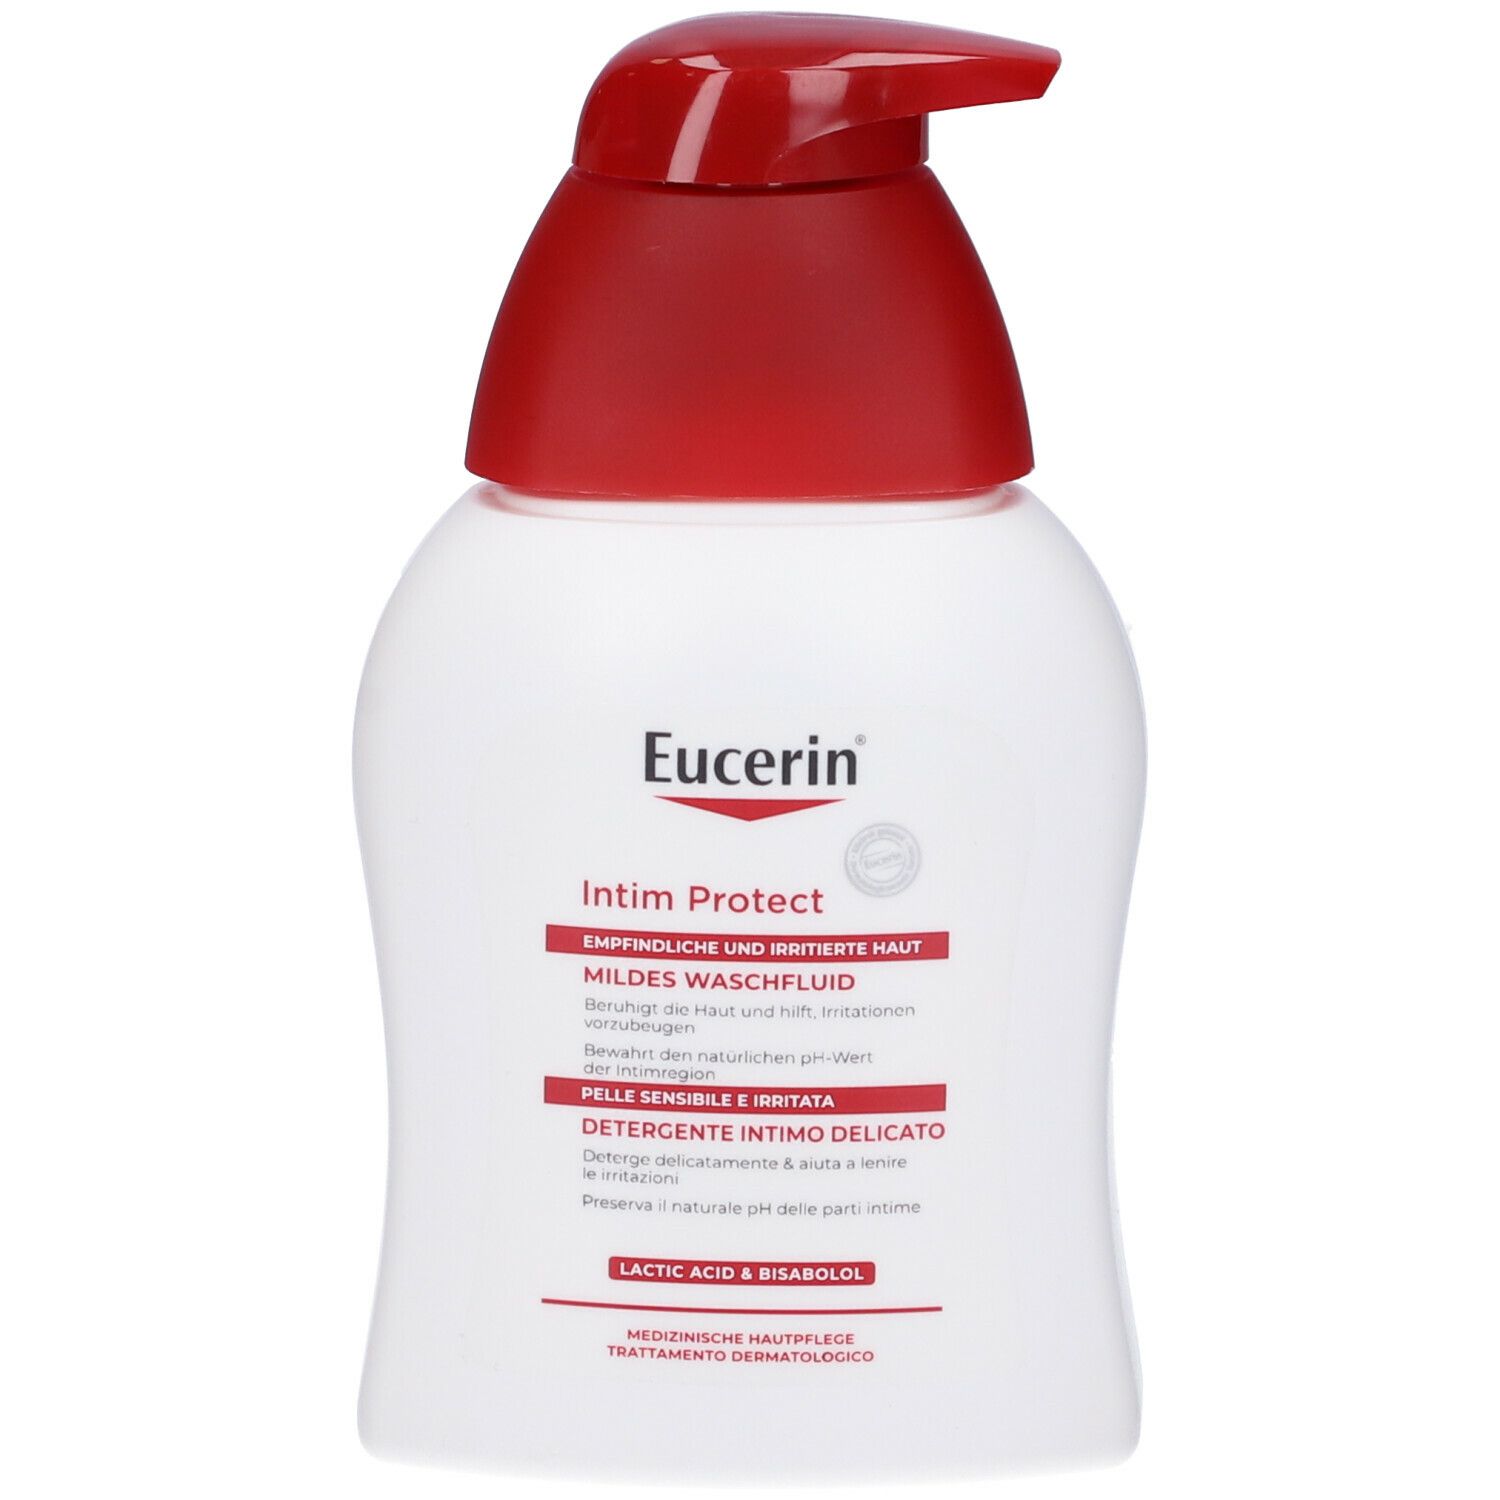 Image of Eucerin Detergente Intimo Delicato 250 ml